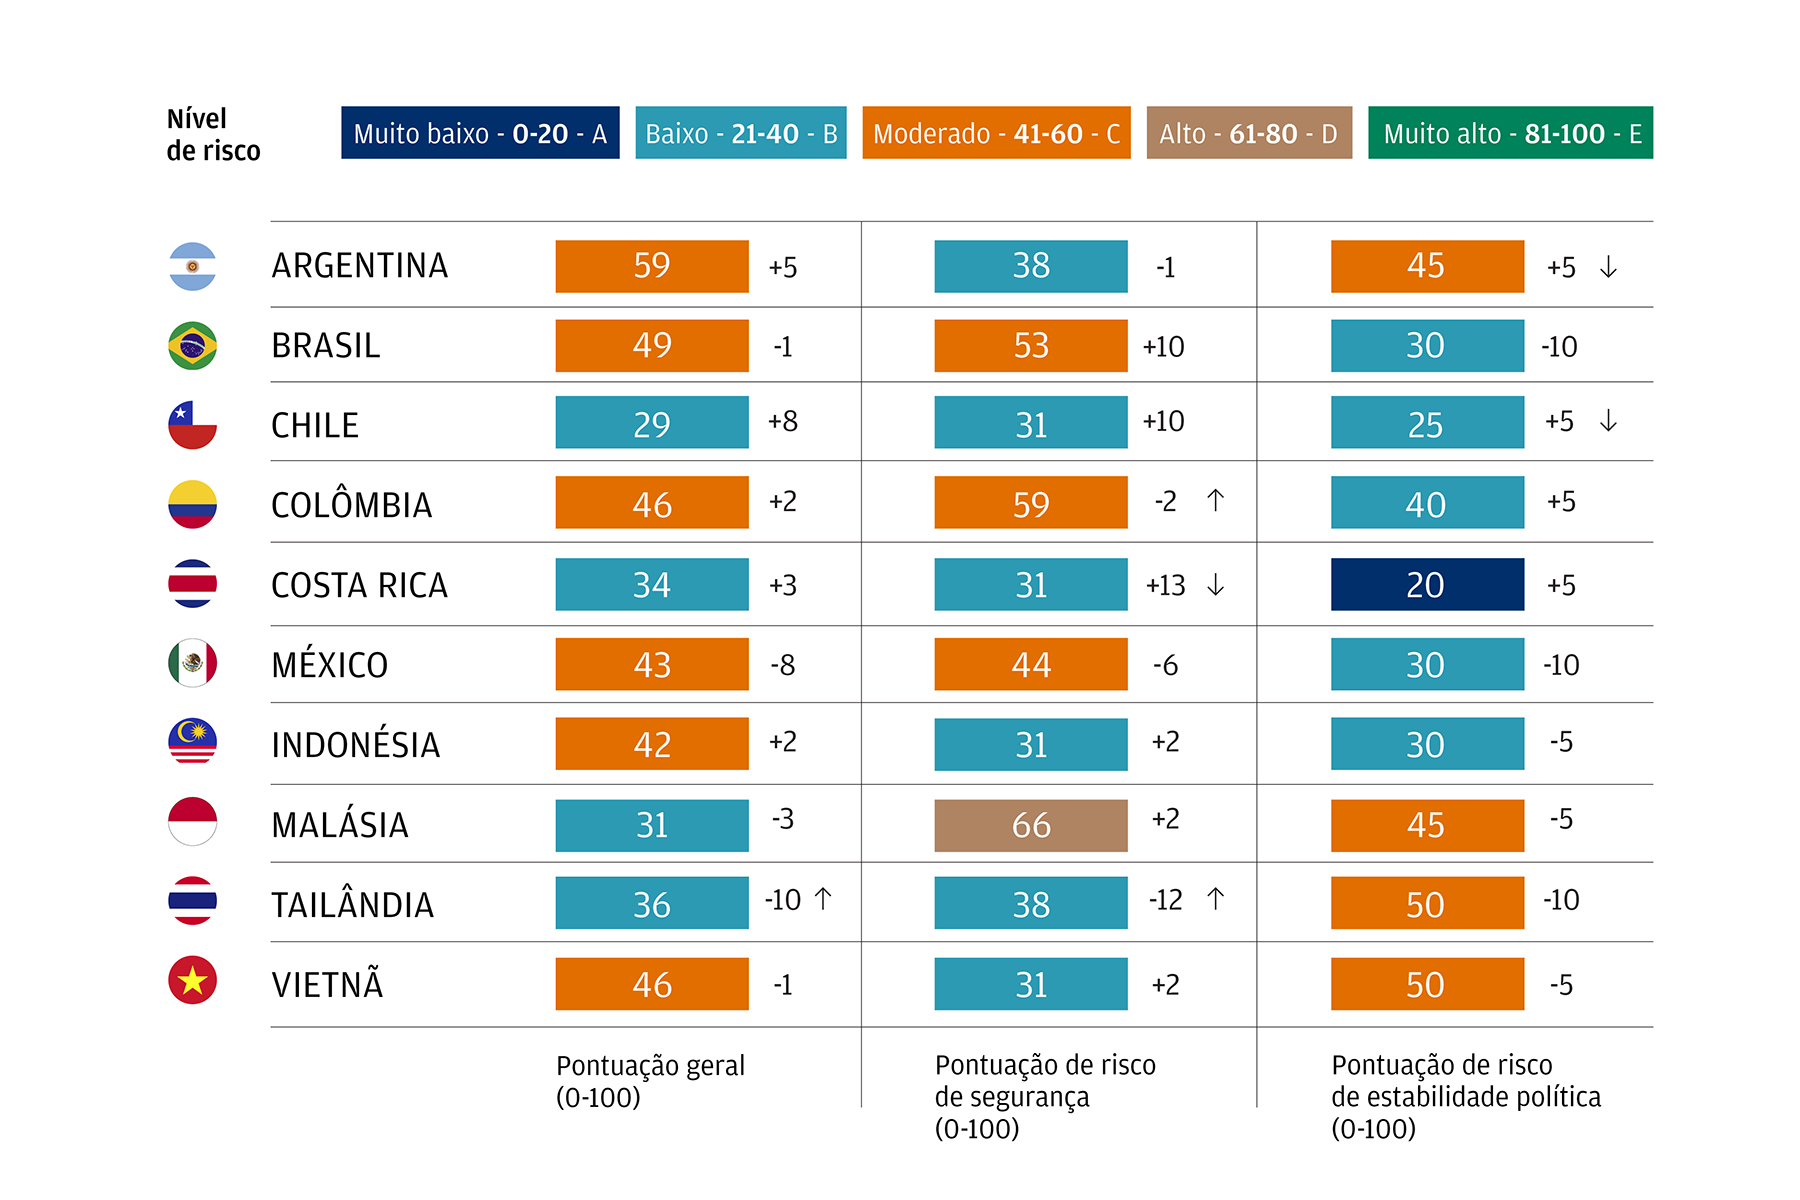 O gráfico mostra pontuações  de risco de segurança e estabilidade política para uma amostra de países na América Latina e Ásia